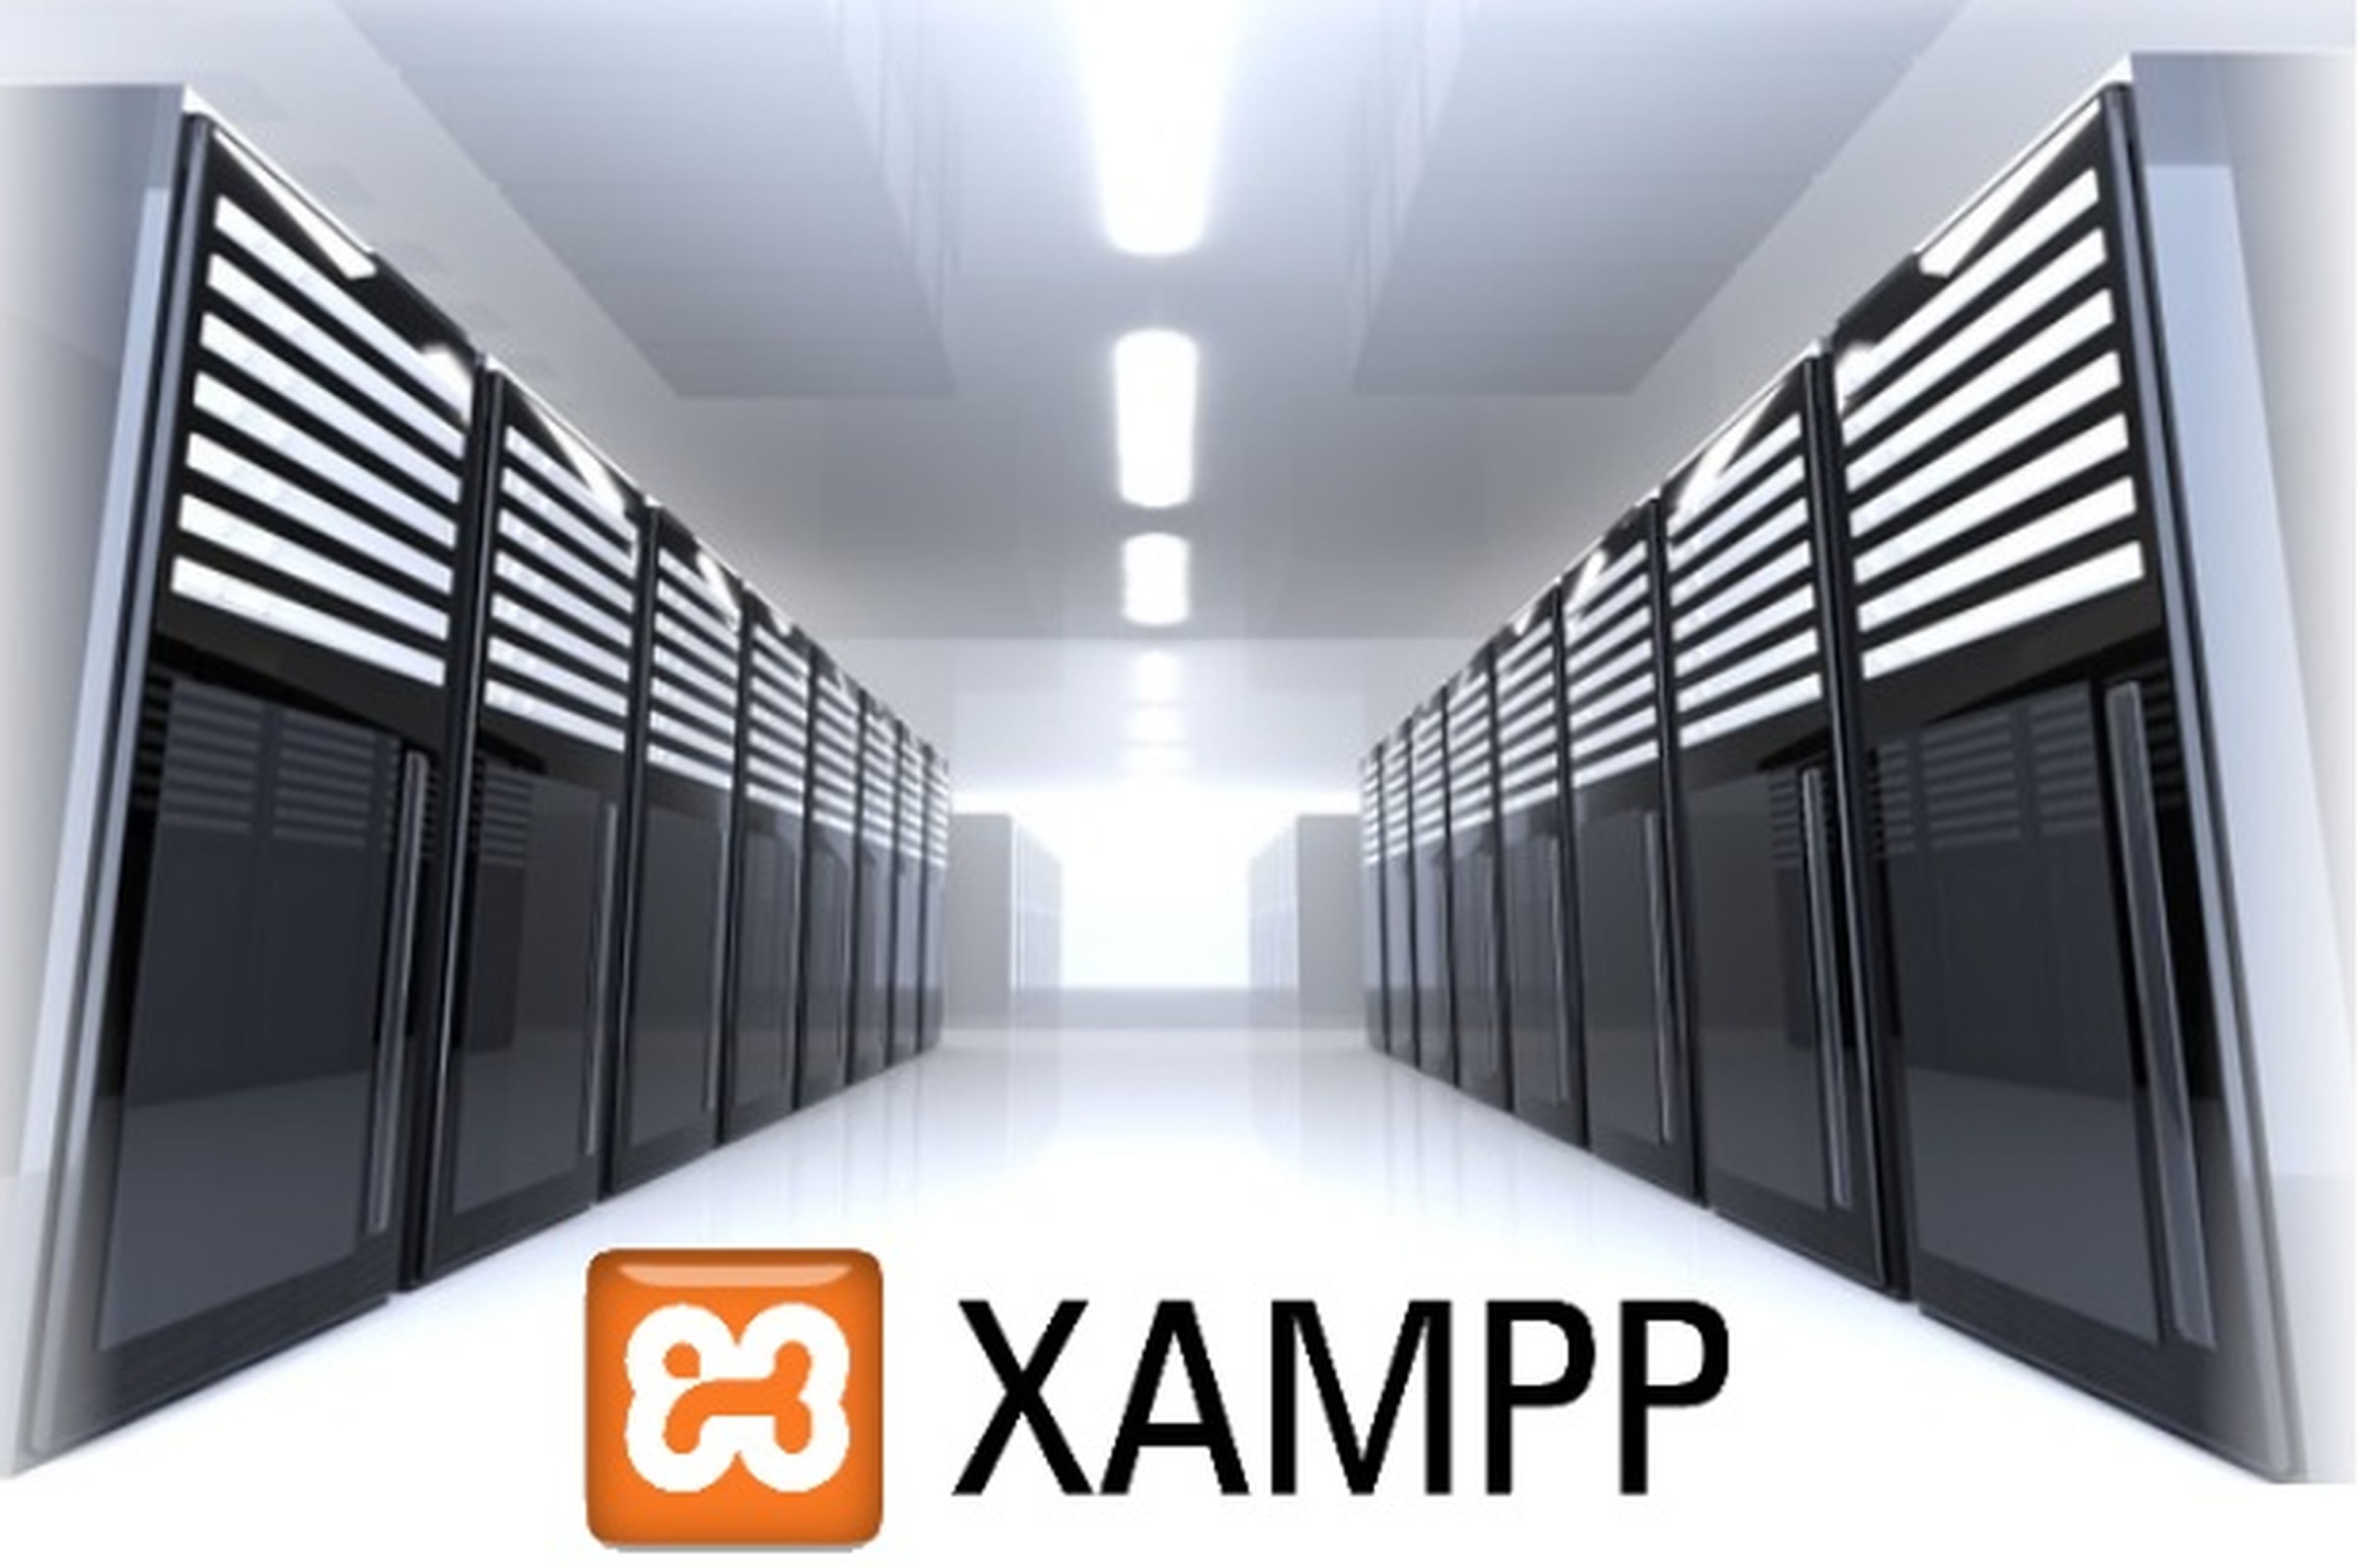 Crea tu propio servidor local para desarrollo web con XAMPP